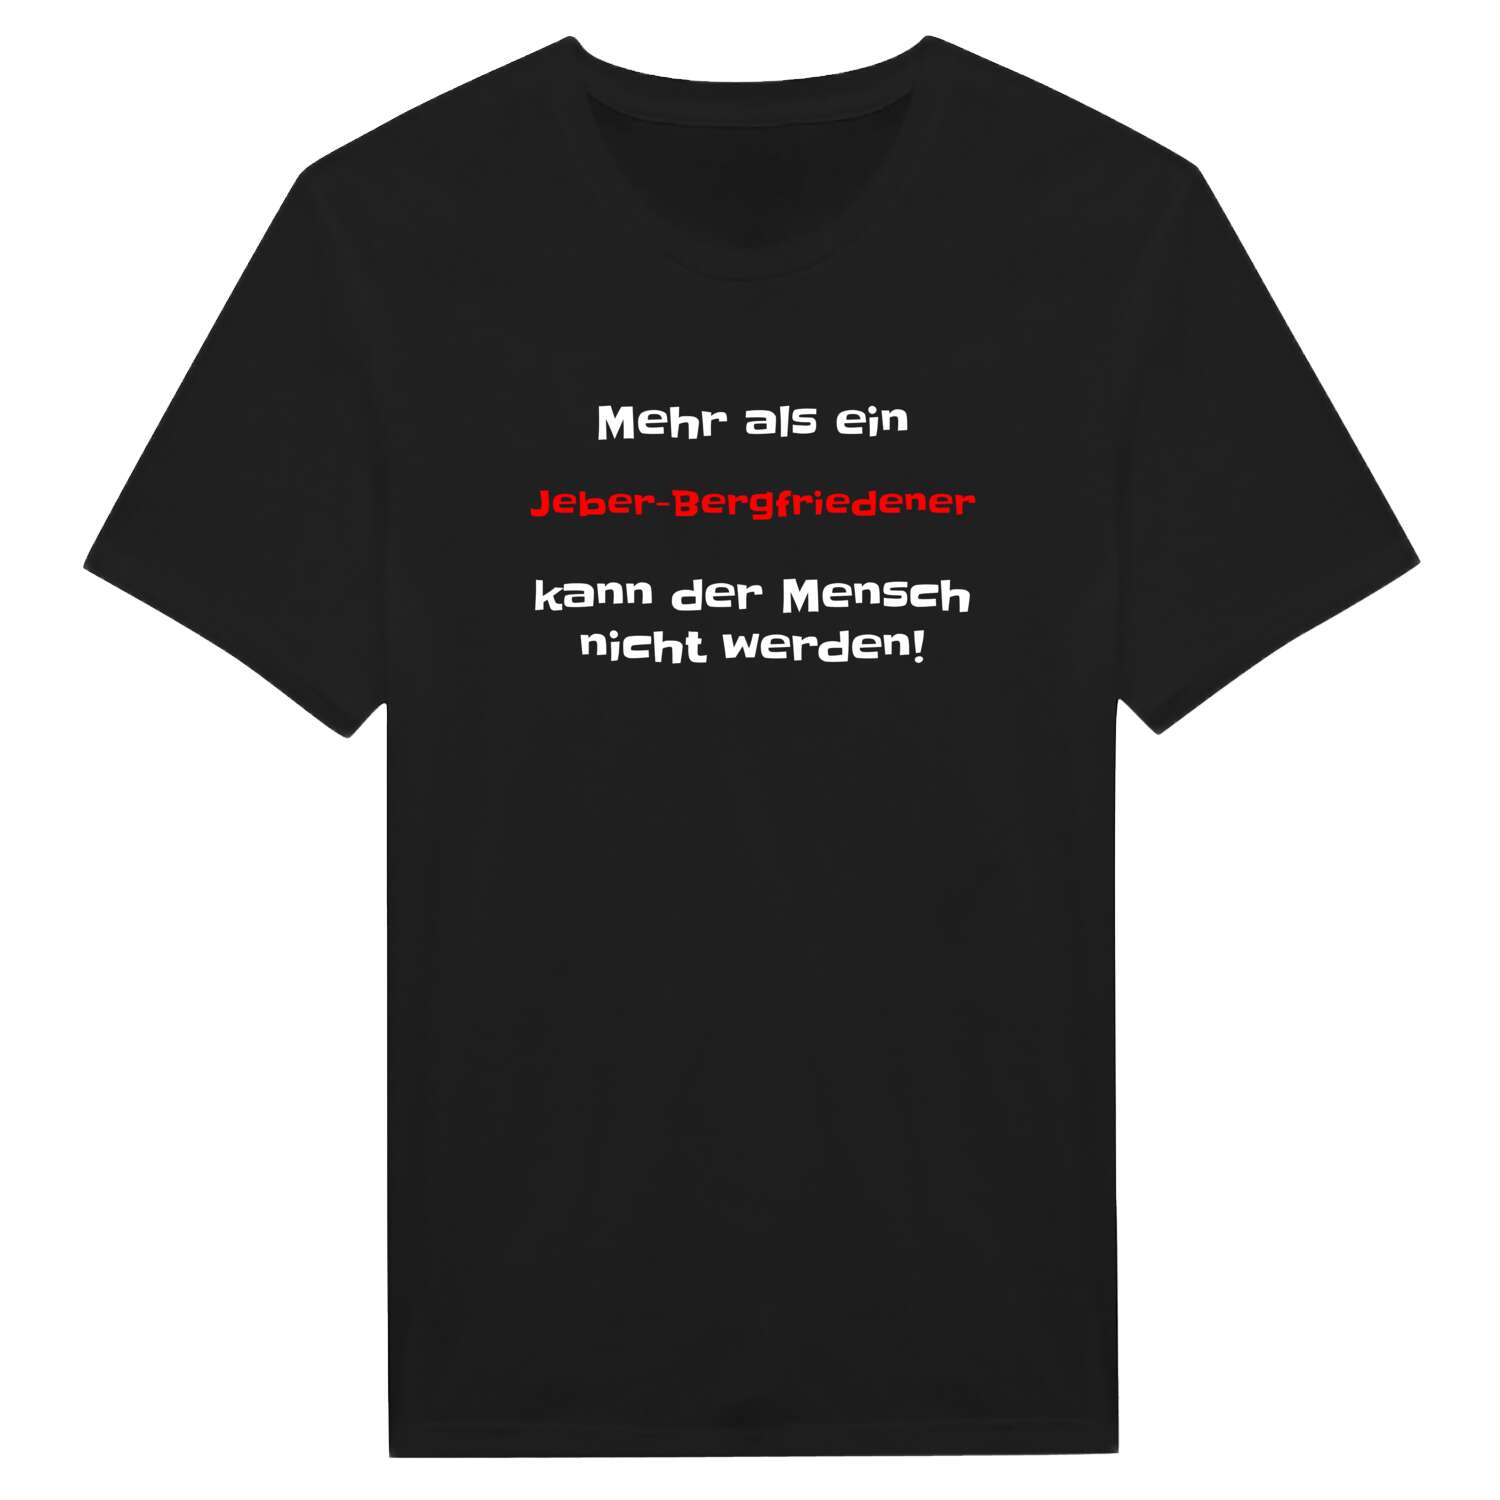 Jeber-Bergfrieden T-Shirt »Mehr als ein«